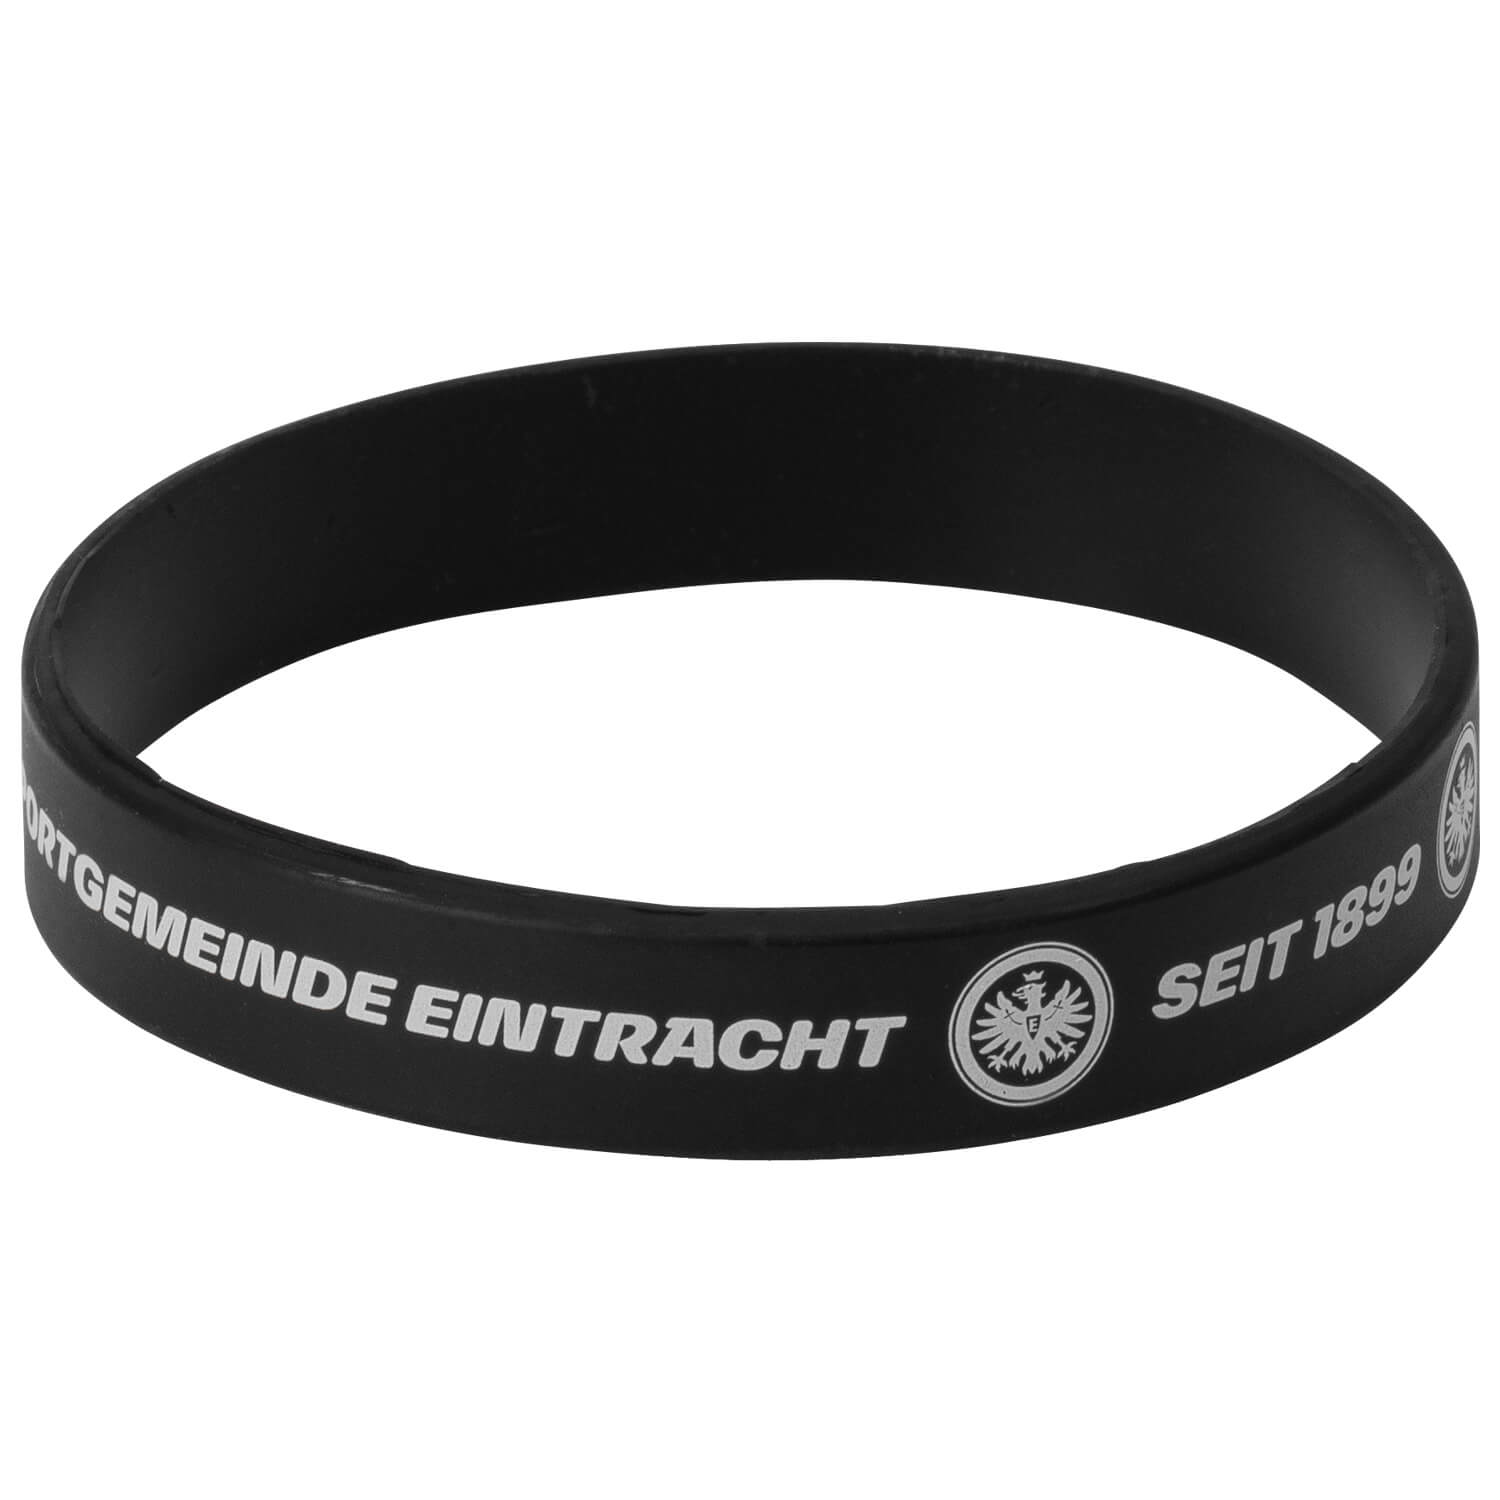 Bild 3: Black & White Silicone Wristbands 